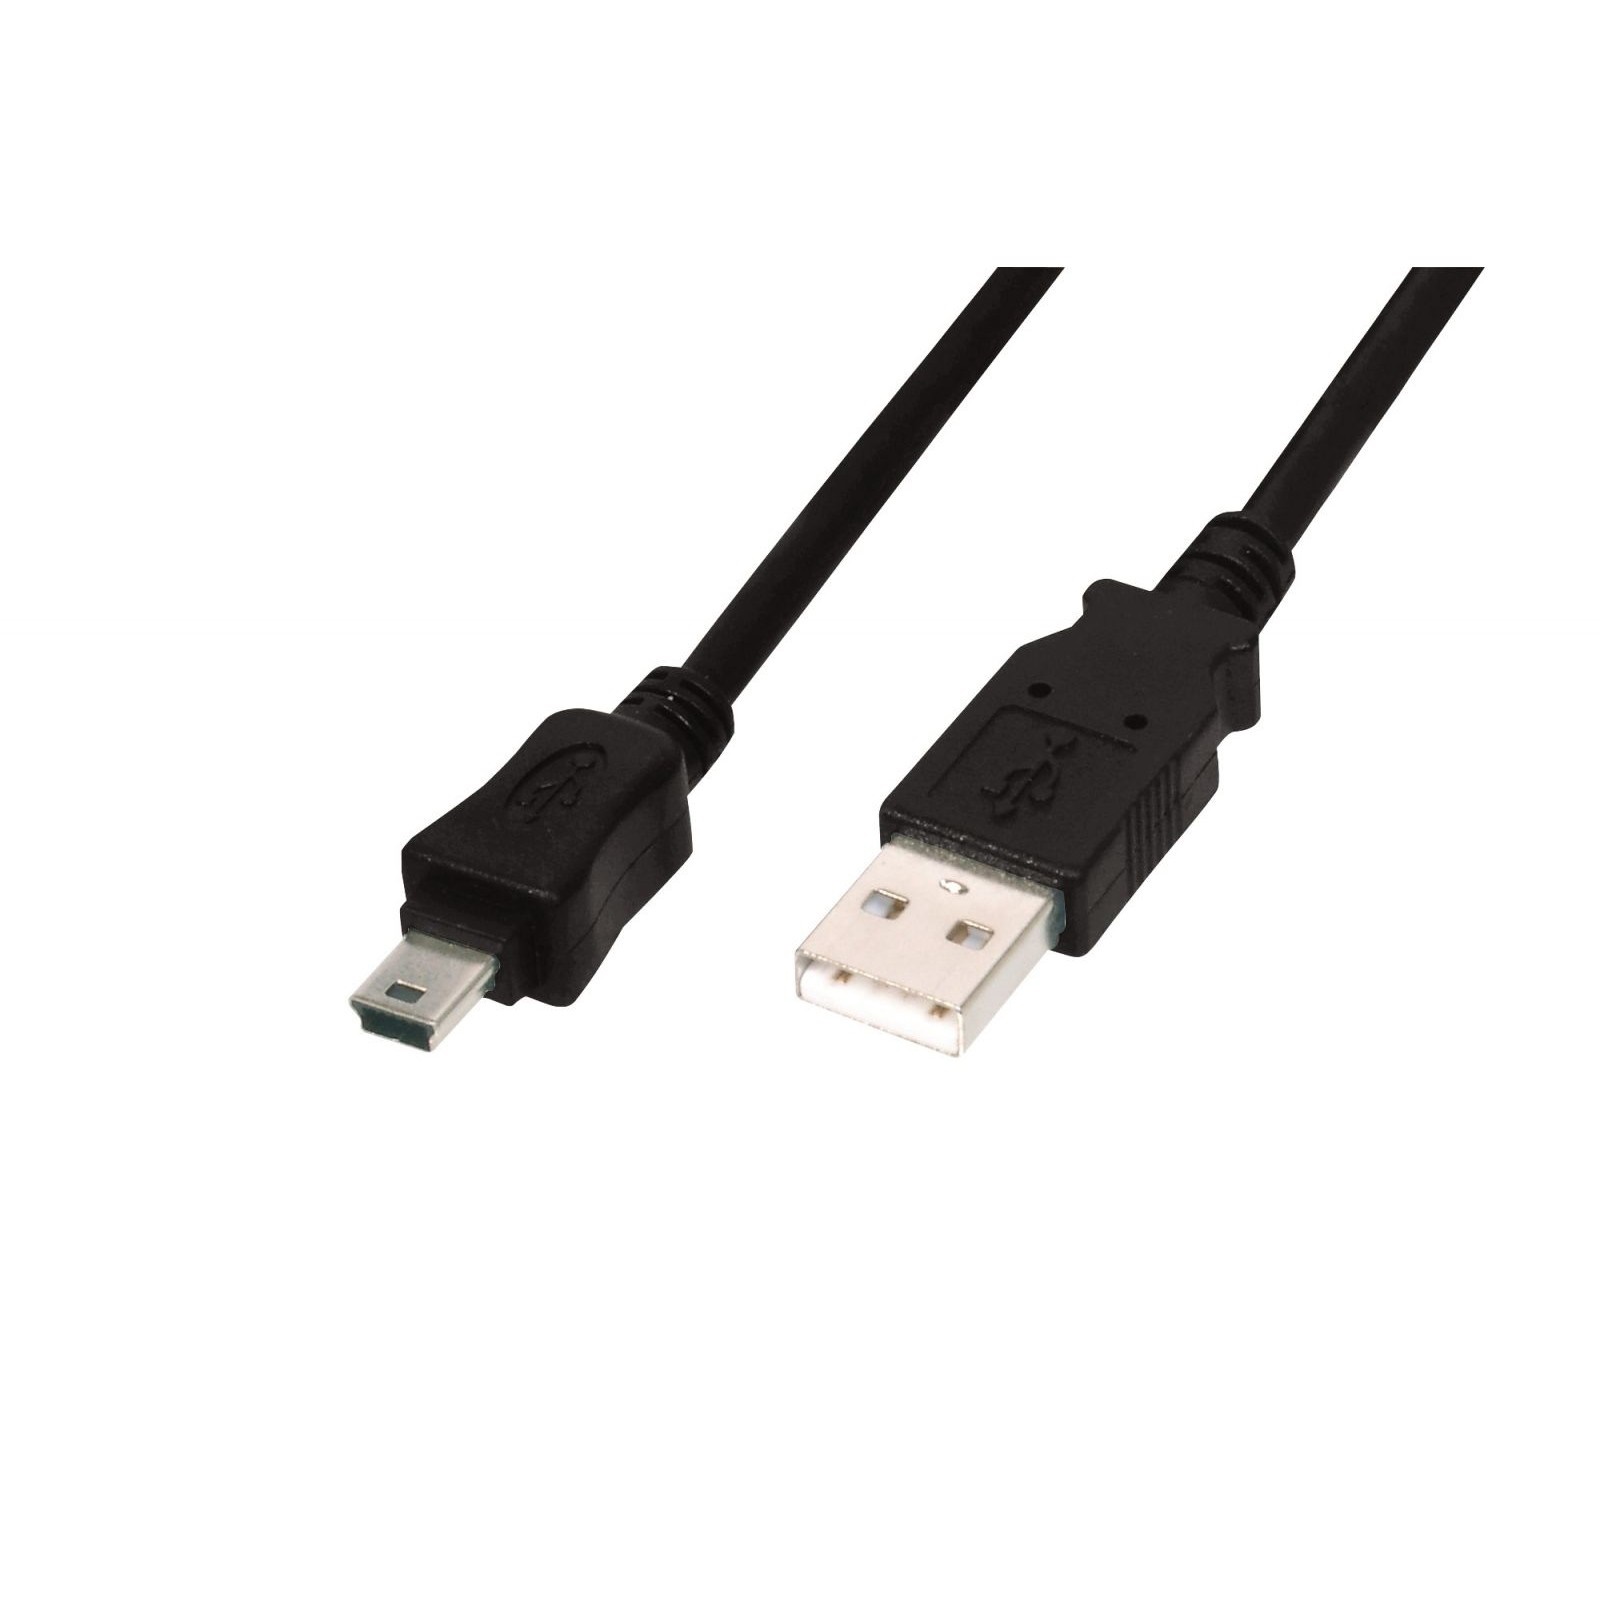 Usb v 2.0. USB 2.0 Mini b 5 Pin. Кабель USB 2.0 A-B 3.0М Ningbo. Кабель USB to Mini USB - 1.0М. Кабель 1,5м MICROUSB-USB 2.0 Ningbo черный.